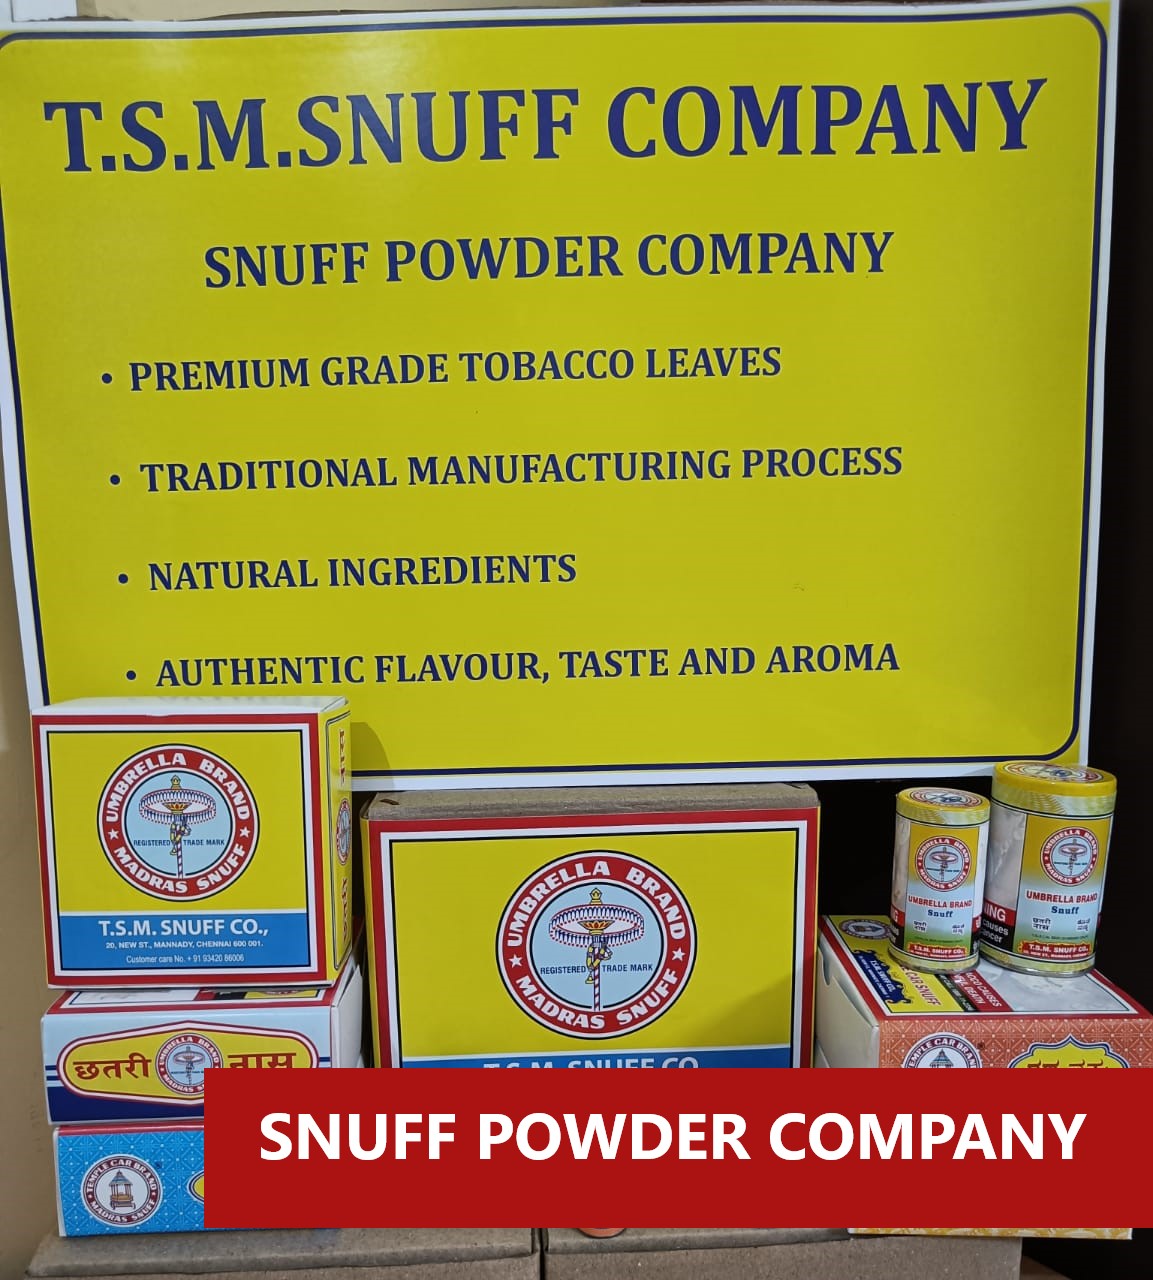 Snuff Powder company